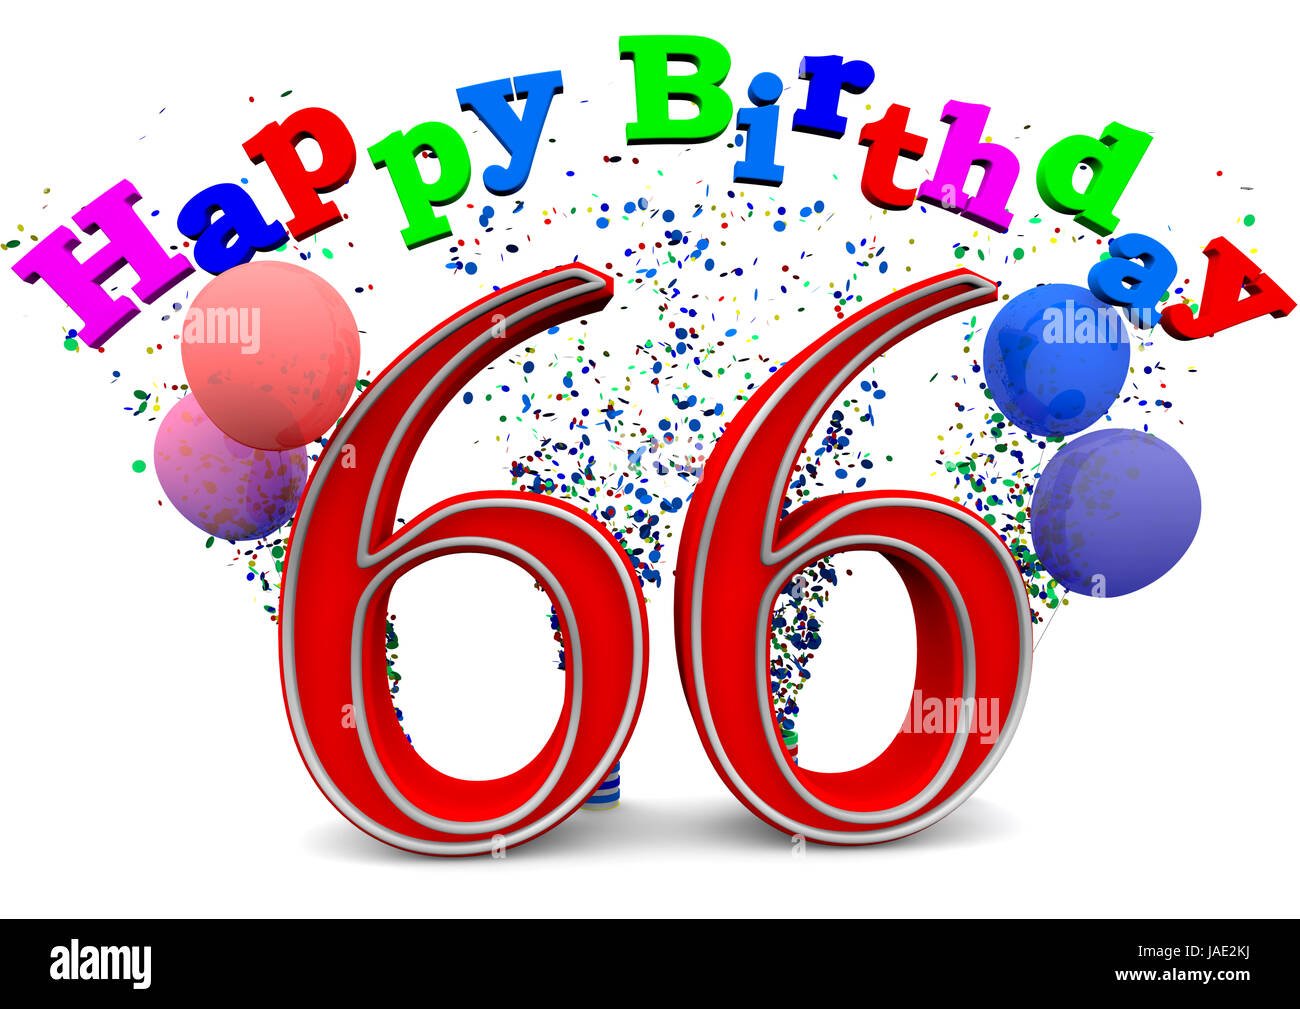 Поздравление с днем рождения 66 летием. Открытки с днем рождения 66 лет. С днём рождения мужчине 66 летием. Поздравление с днем рождения 66 лет. Открытка с 66 летием мужчине.